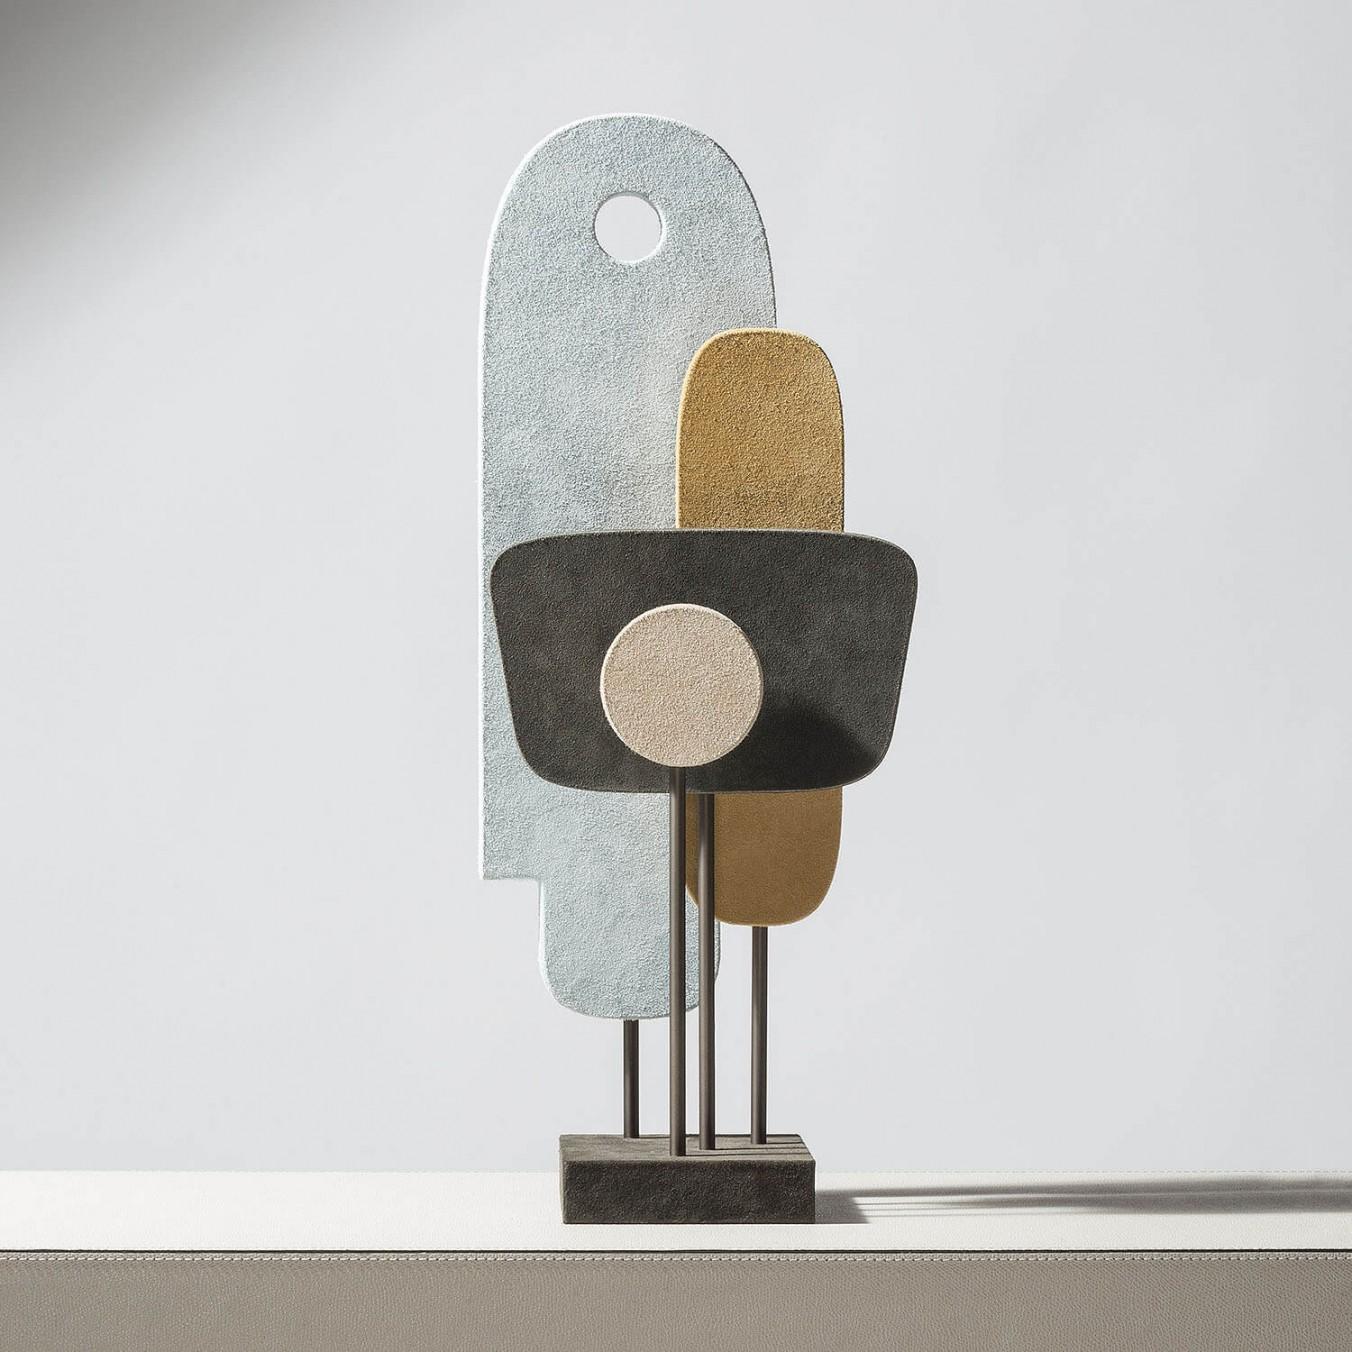 Zeitgenössische Lederskulptur - tabou 1 von Stephane Parmentier für Giobagnara.

Diese zeitgenössischen Totems, eine Mischung aus Space-Age-Design und Stammeskunst, sind großartige Dekorationsstücke, die eine Verbindung zwischen Abstraktion und